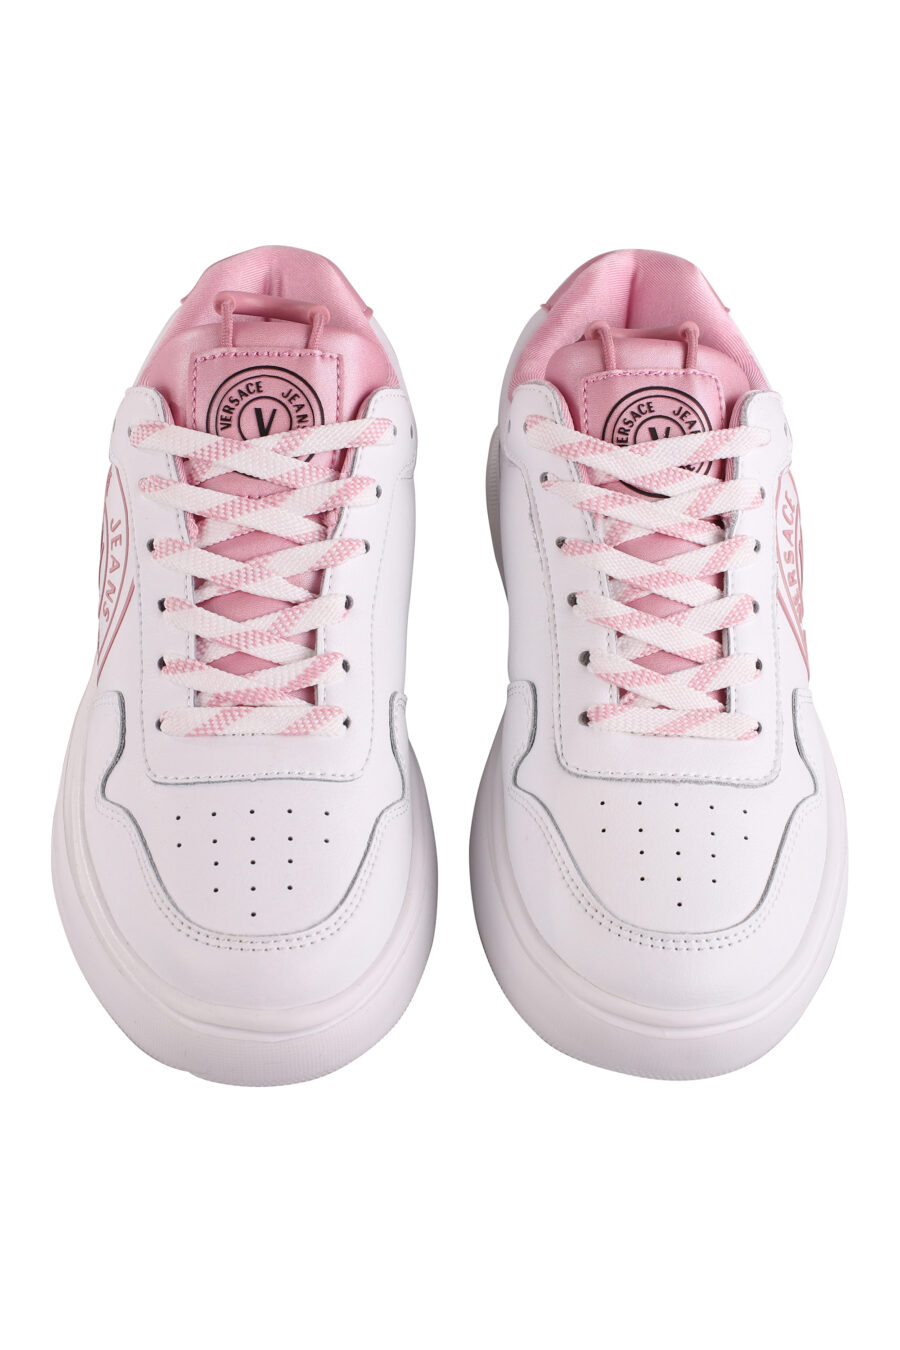 Weiße Turnschuhe mit Details und rosa Logo - IMG 9096